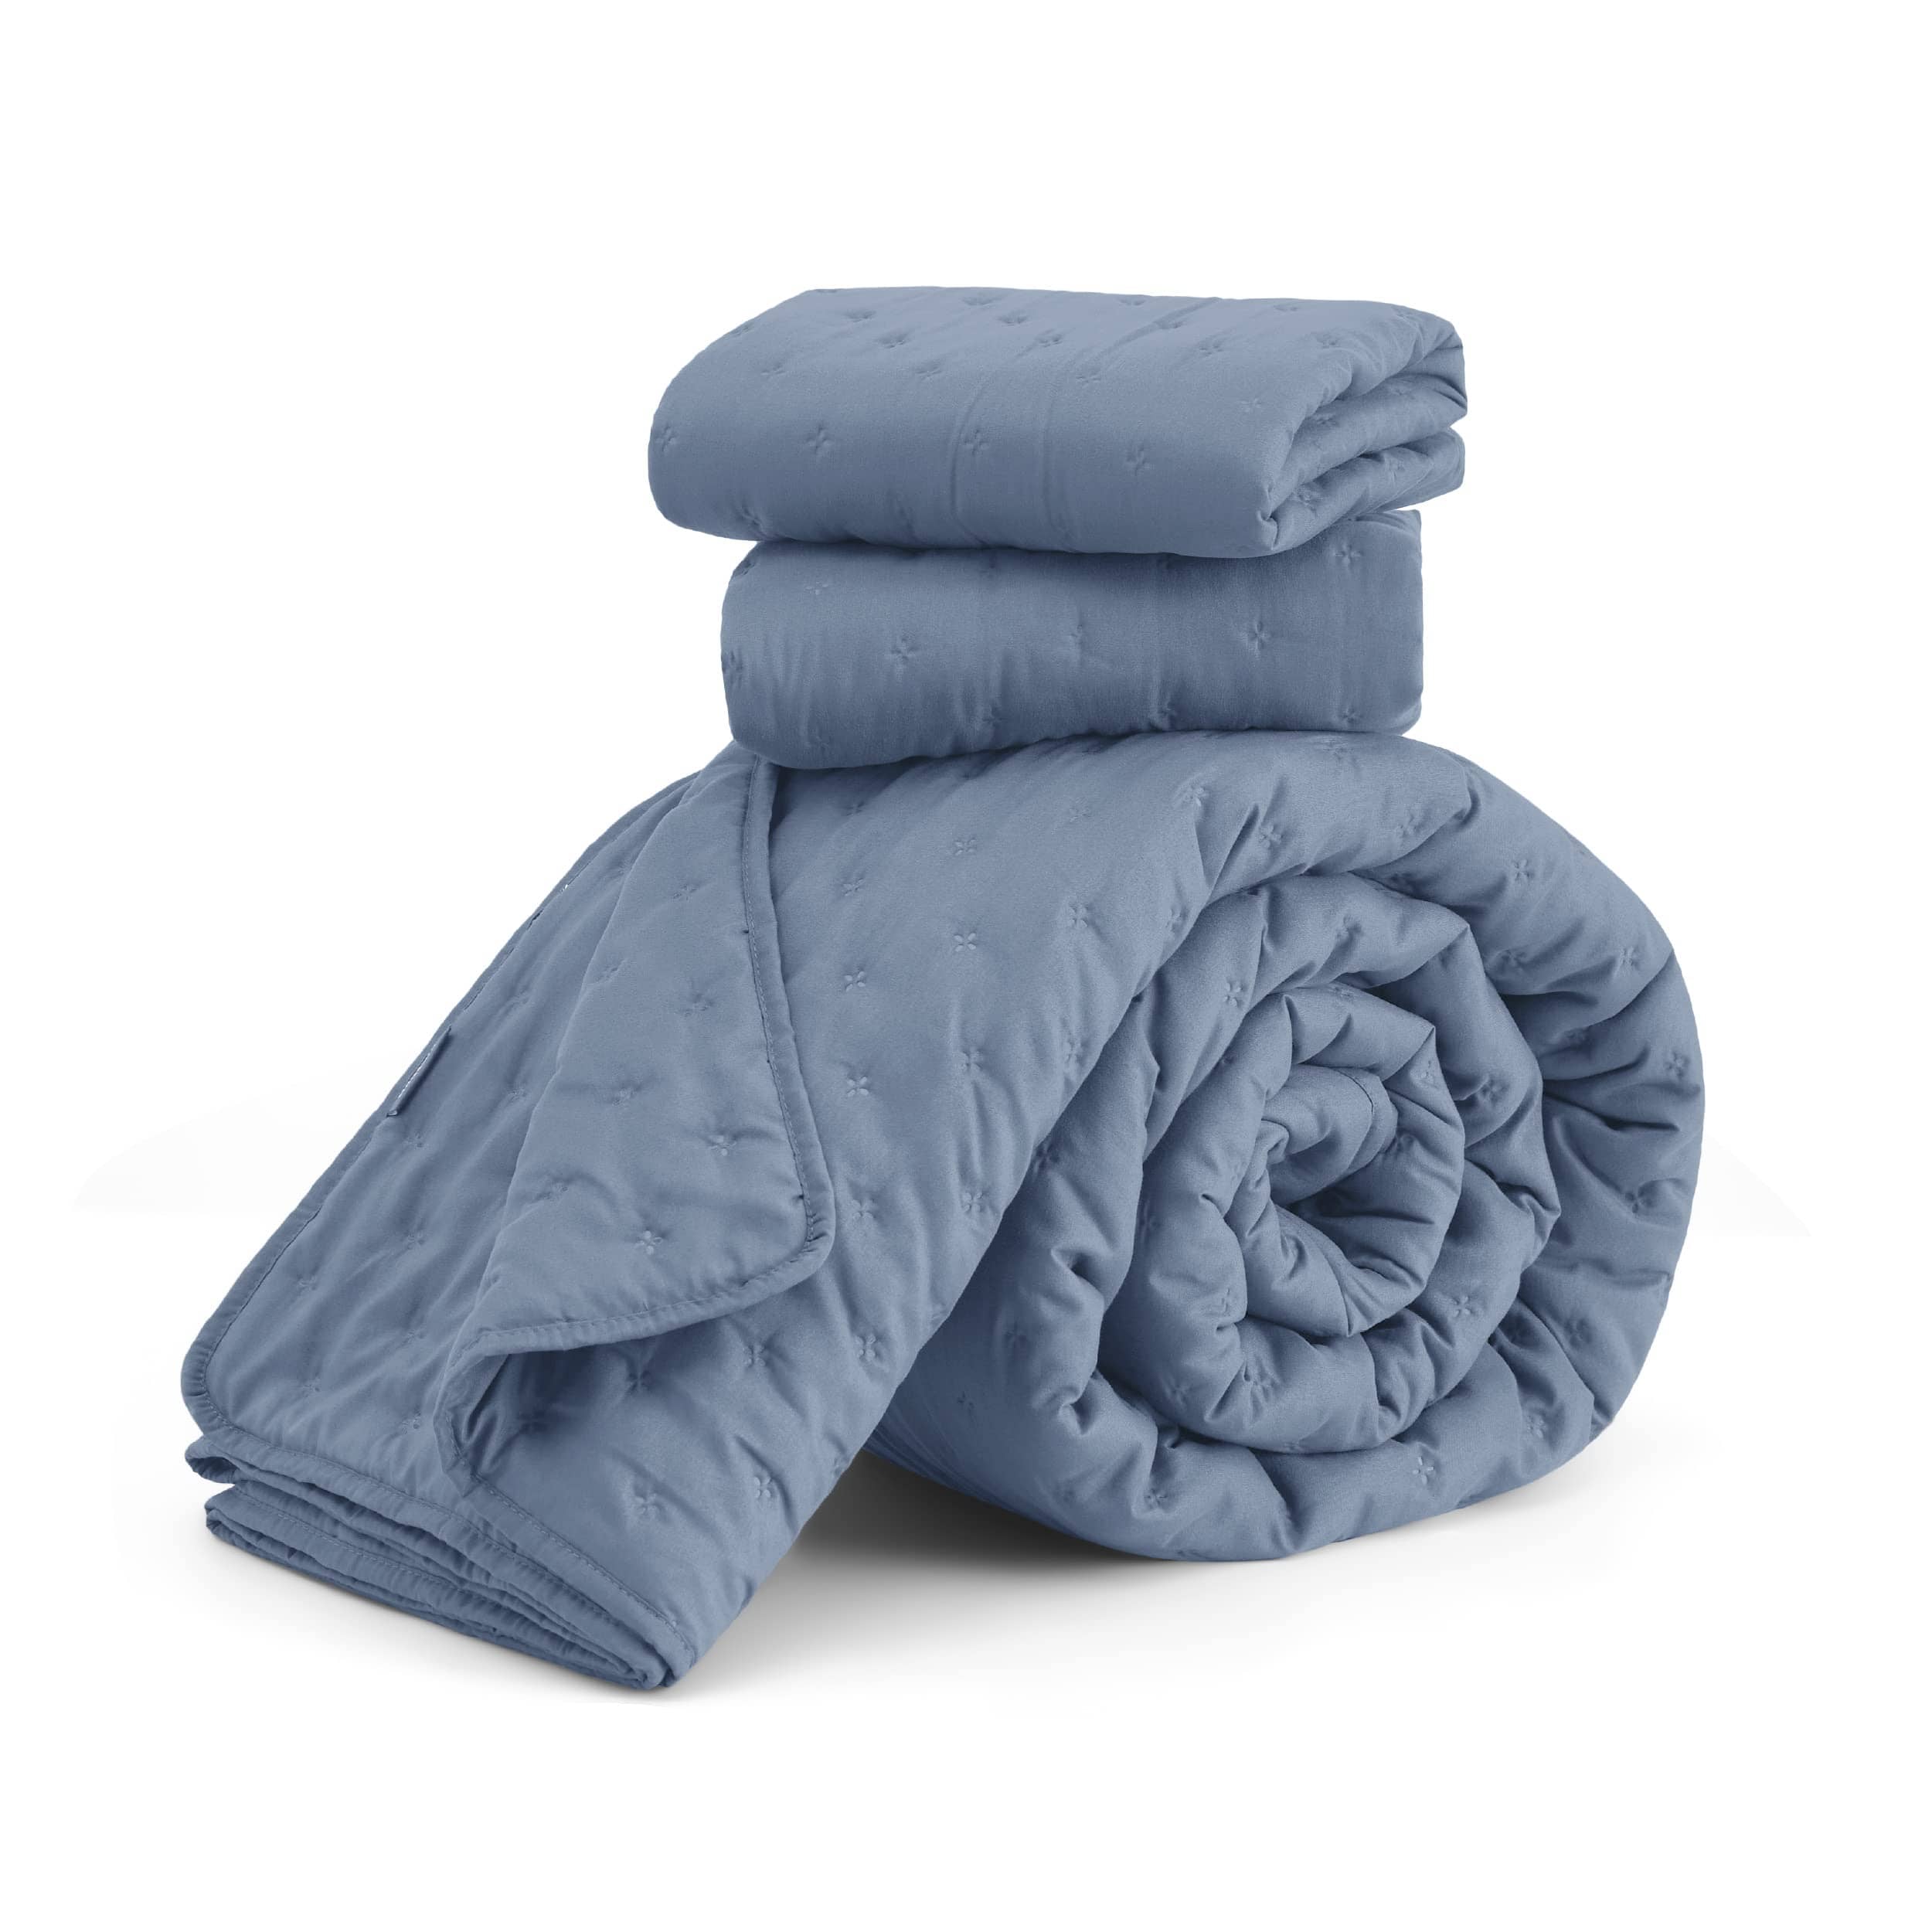 Bedsure Soft Ultrasonic Quilt Set